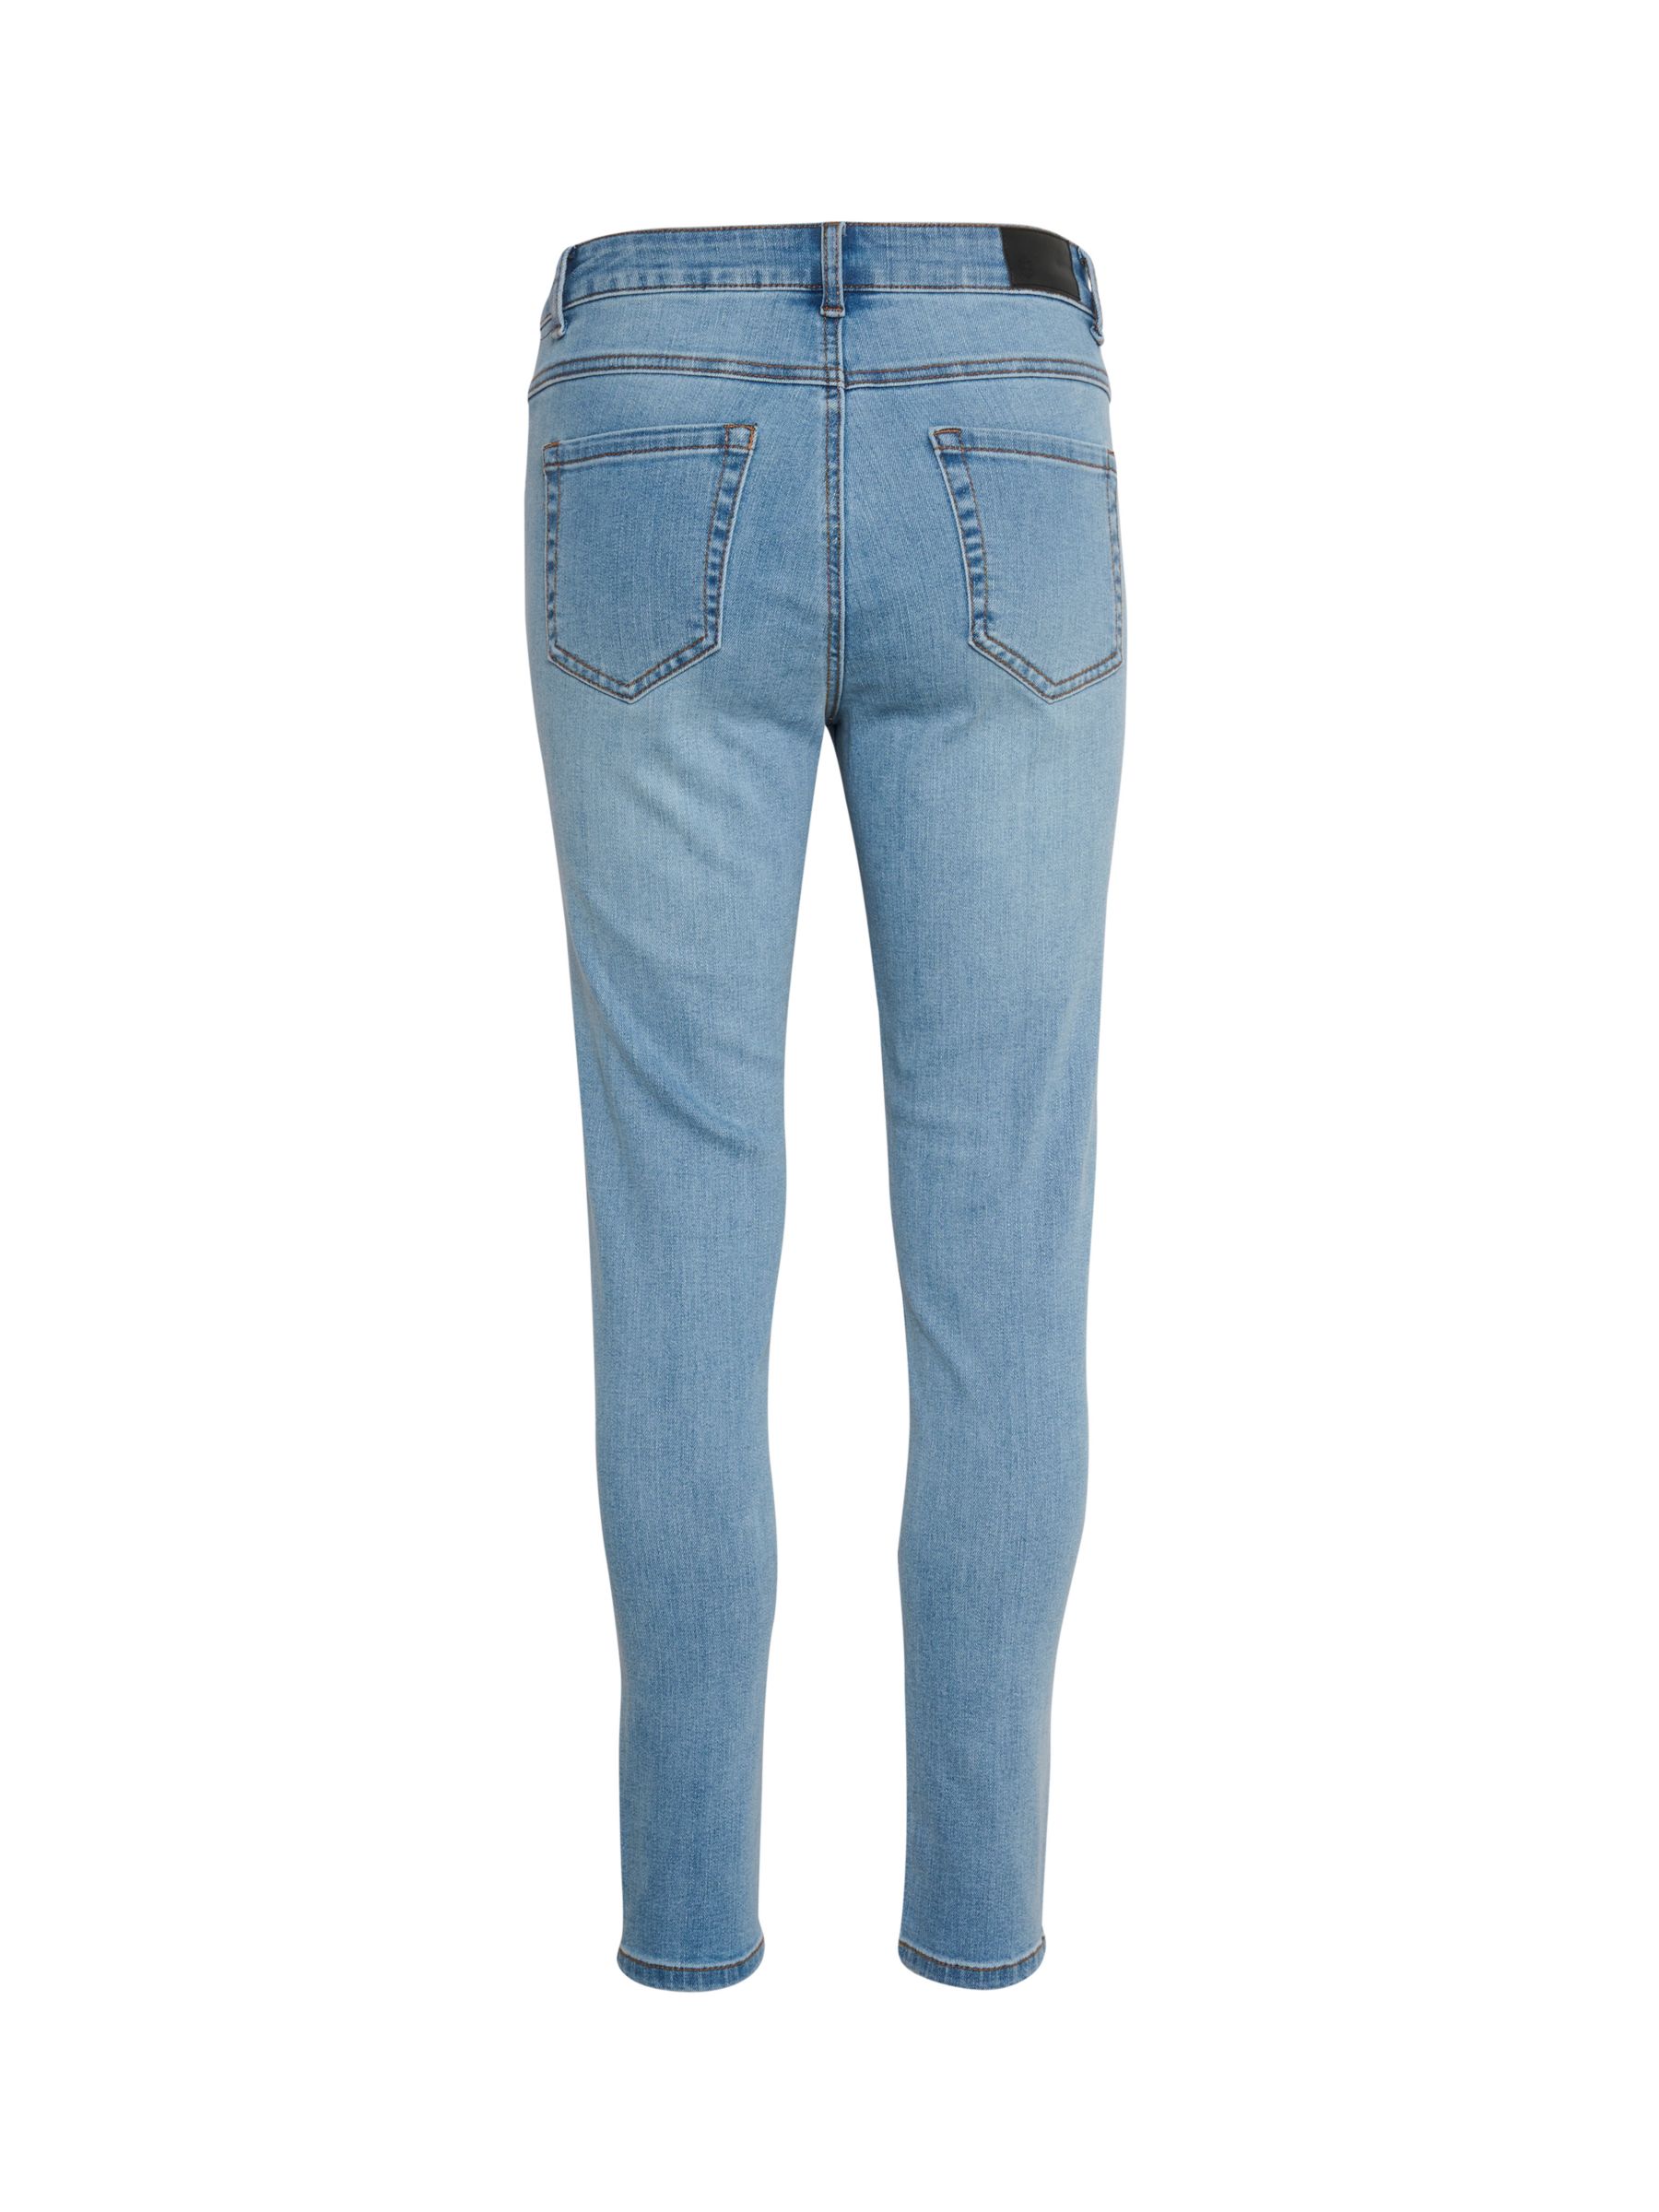 KAFFE Sinem High Waisted Jeans, Blue Washed Denim, 8